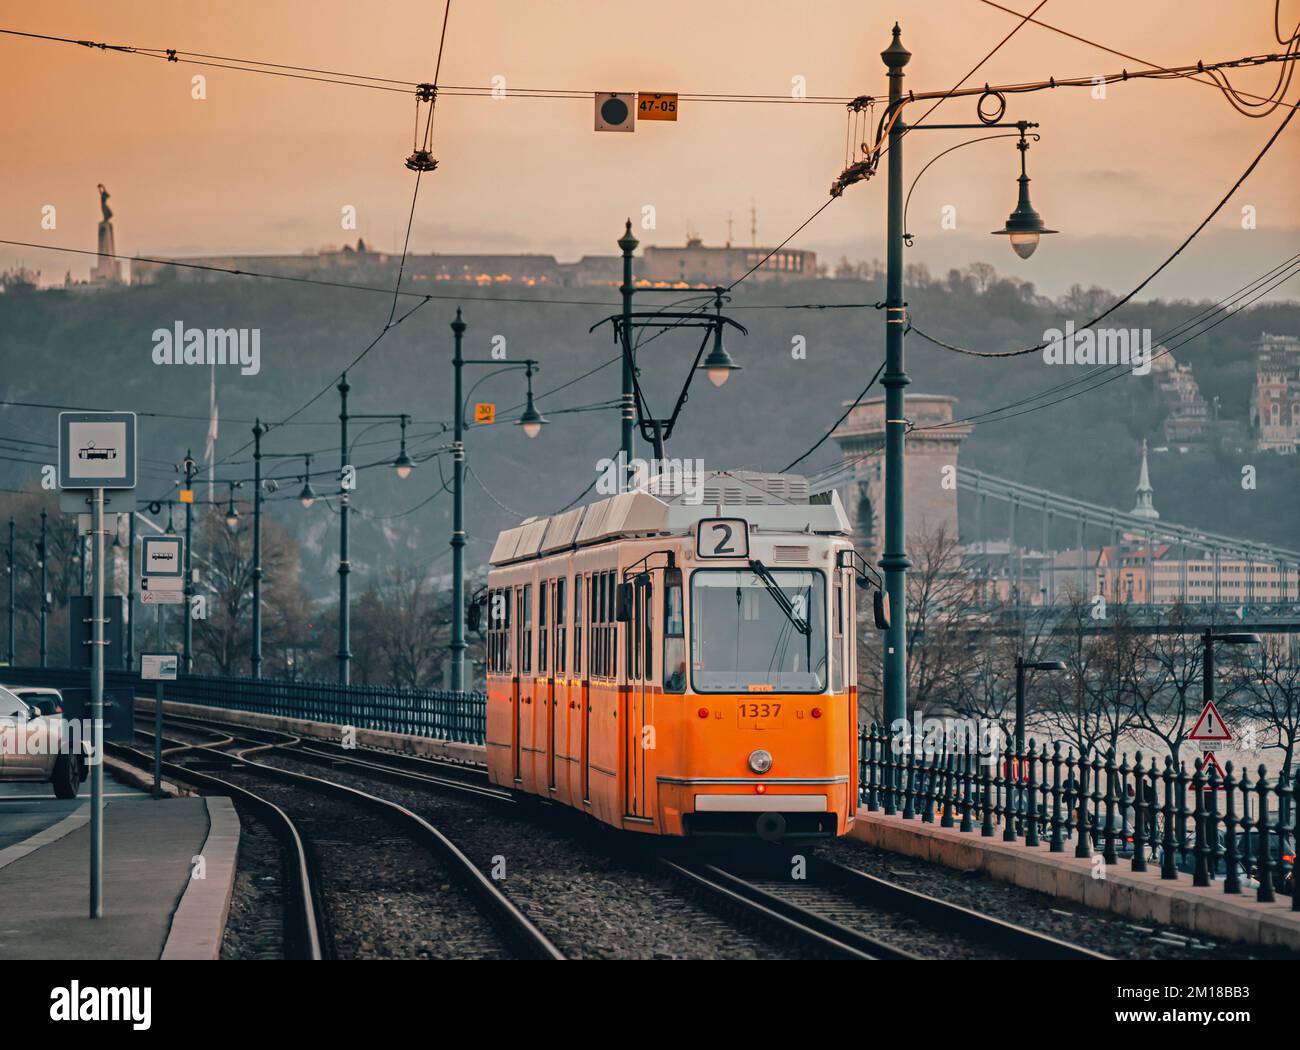 Eine alte Straßenbahn in der Nähe der Donau in Budapest. Die Straßenbahnlinie 2 mit alten Autos ist eine beliebte Touristenattraktion. Blick auf die Altstadt bei Sonnenuntergang. Stockfoto